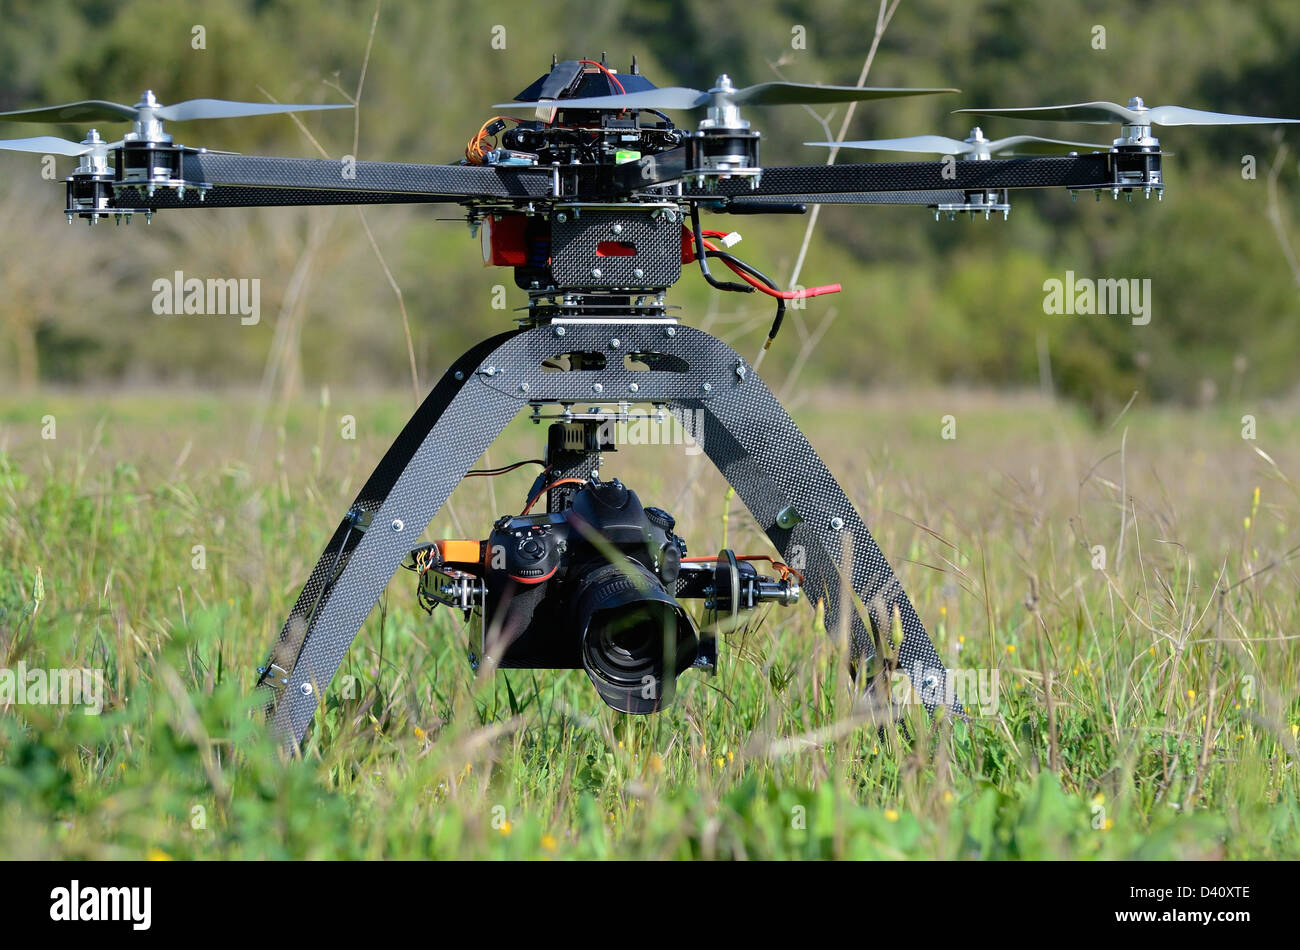 Zumbido y cámara digital en un vehículo aéreo no tripulado (UAV o zumbido), con seis rotores, utilizado para la fotografía aérea o filmaciones Foto de stock